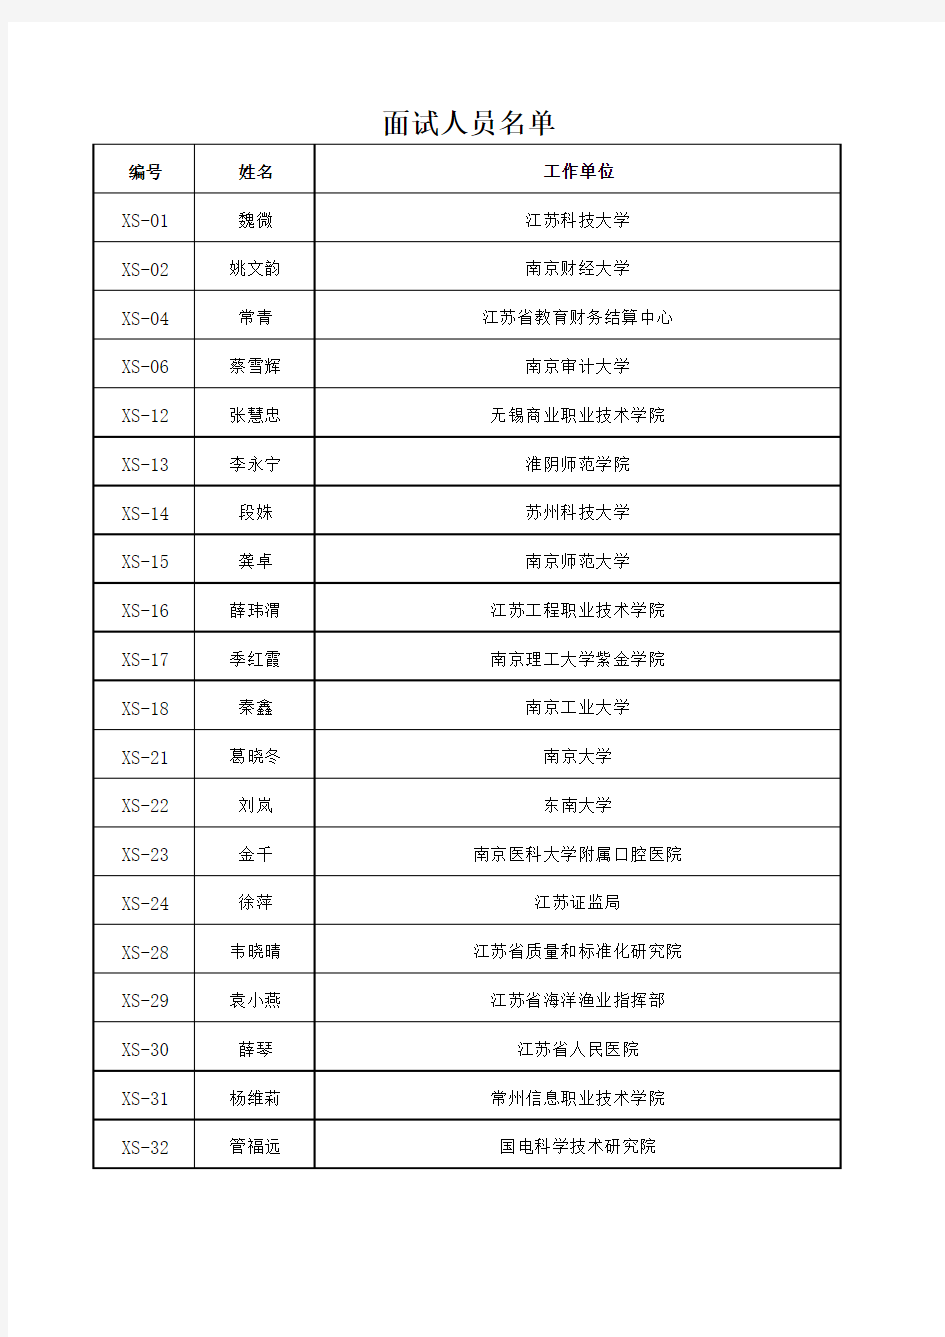 江苏省第二届会计领军人才拟面试名单